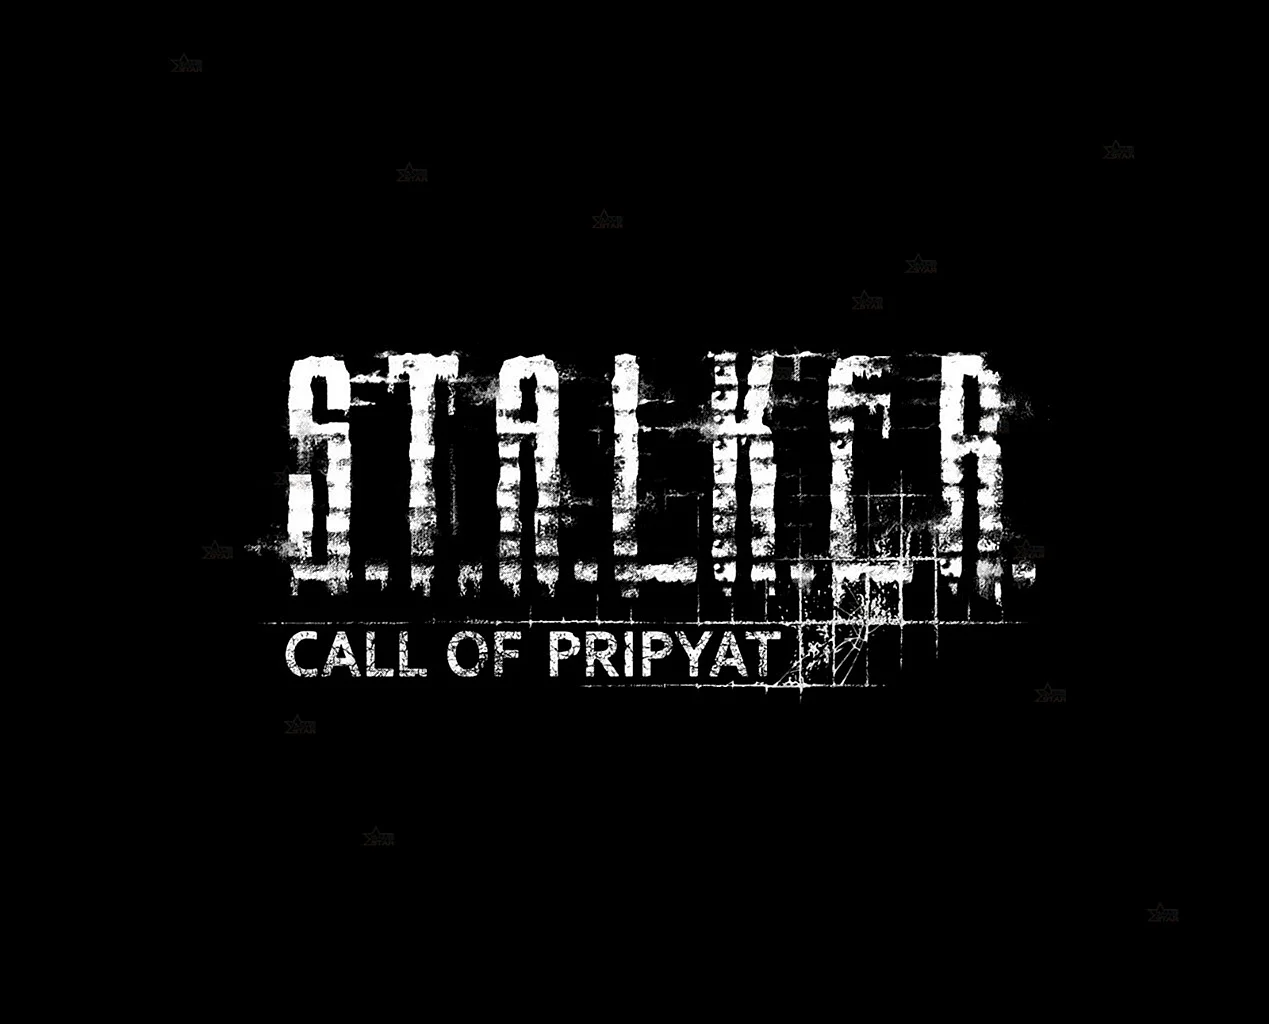 Stalker тень Чернобыля логотип